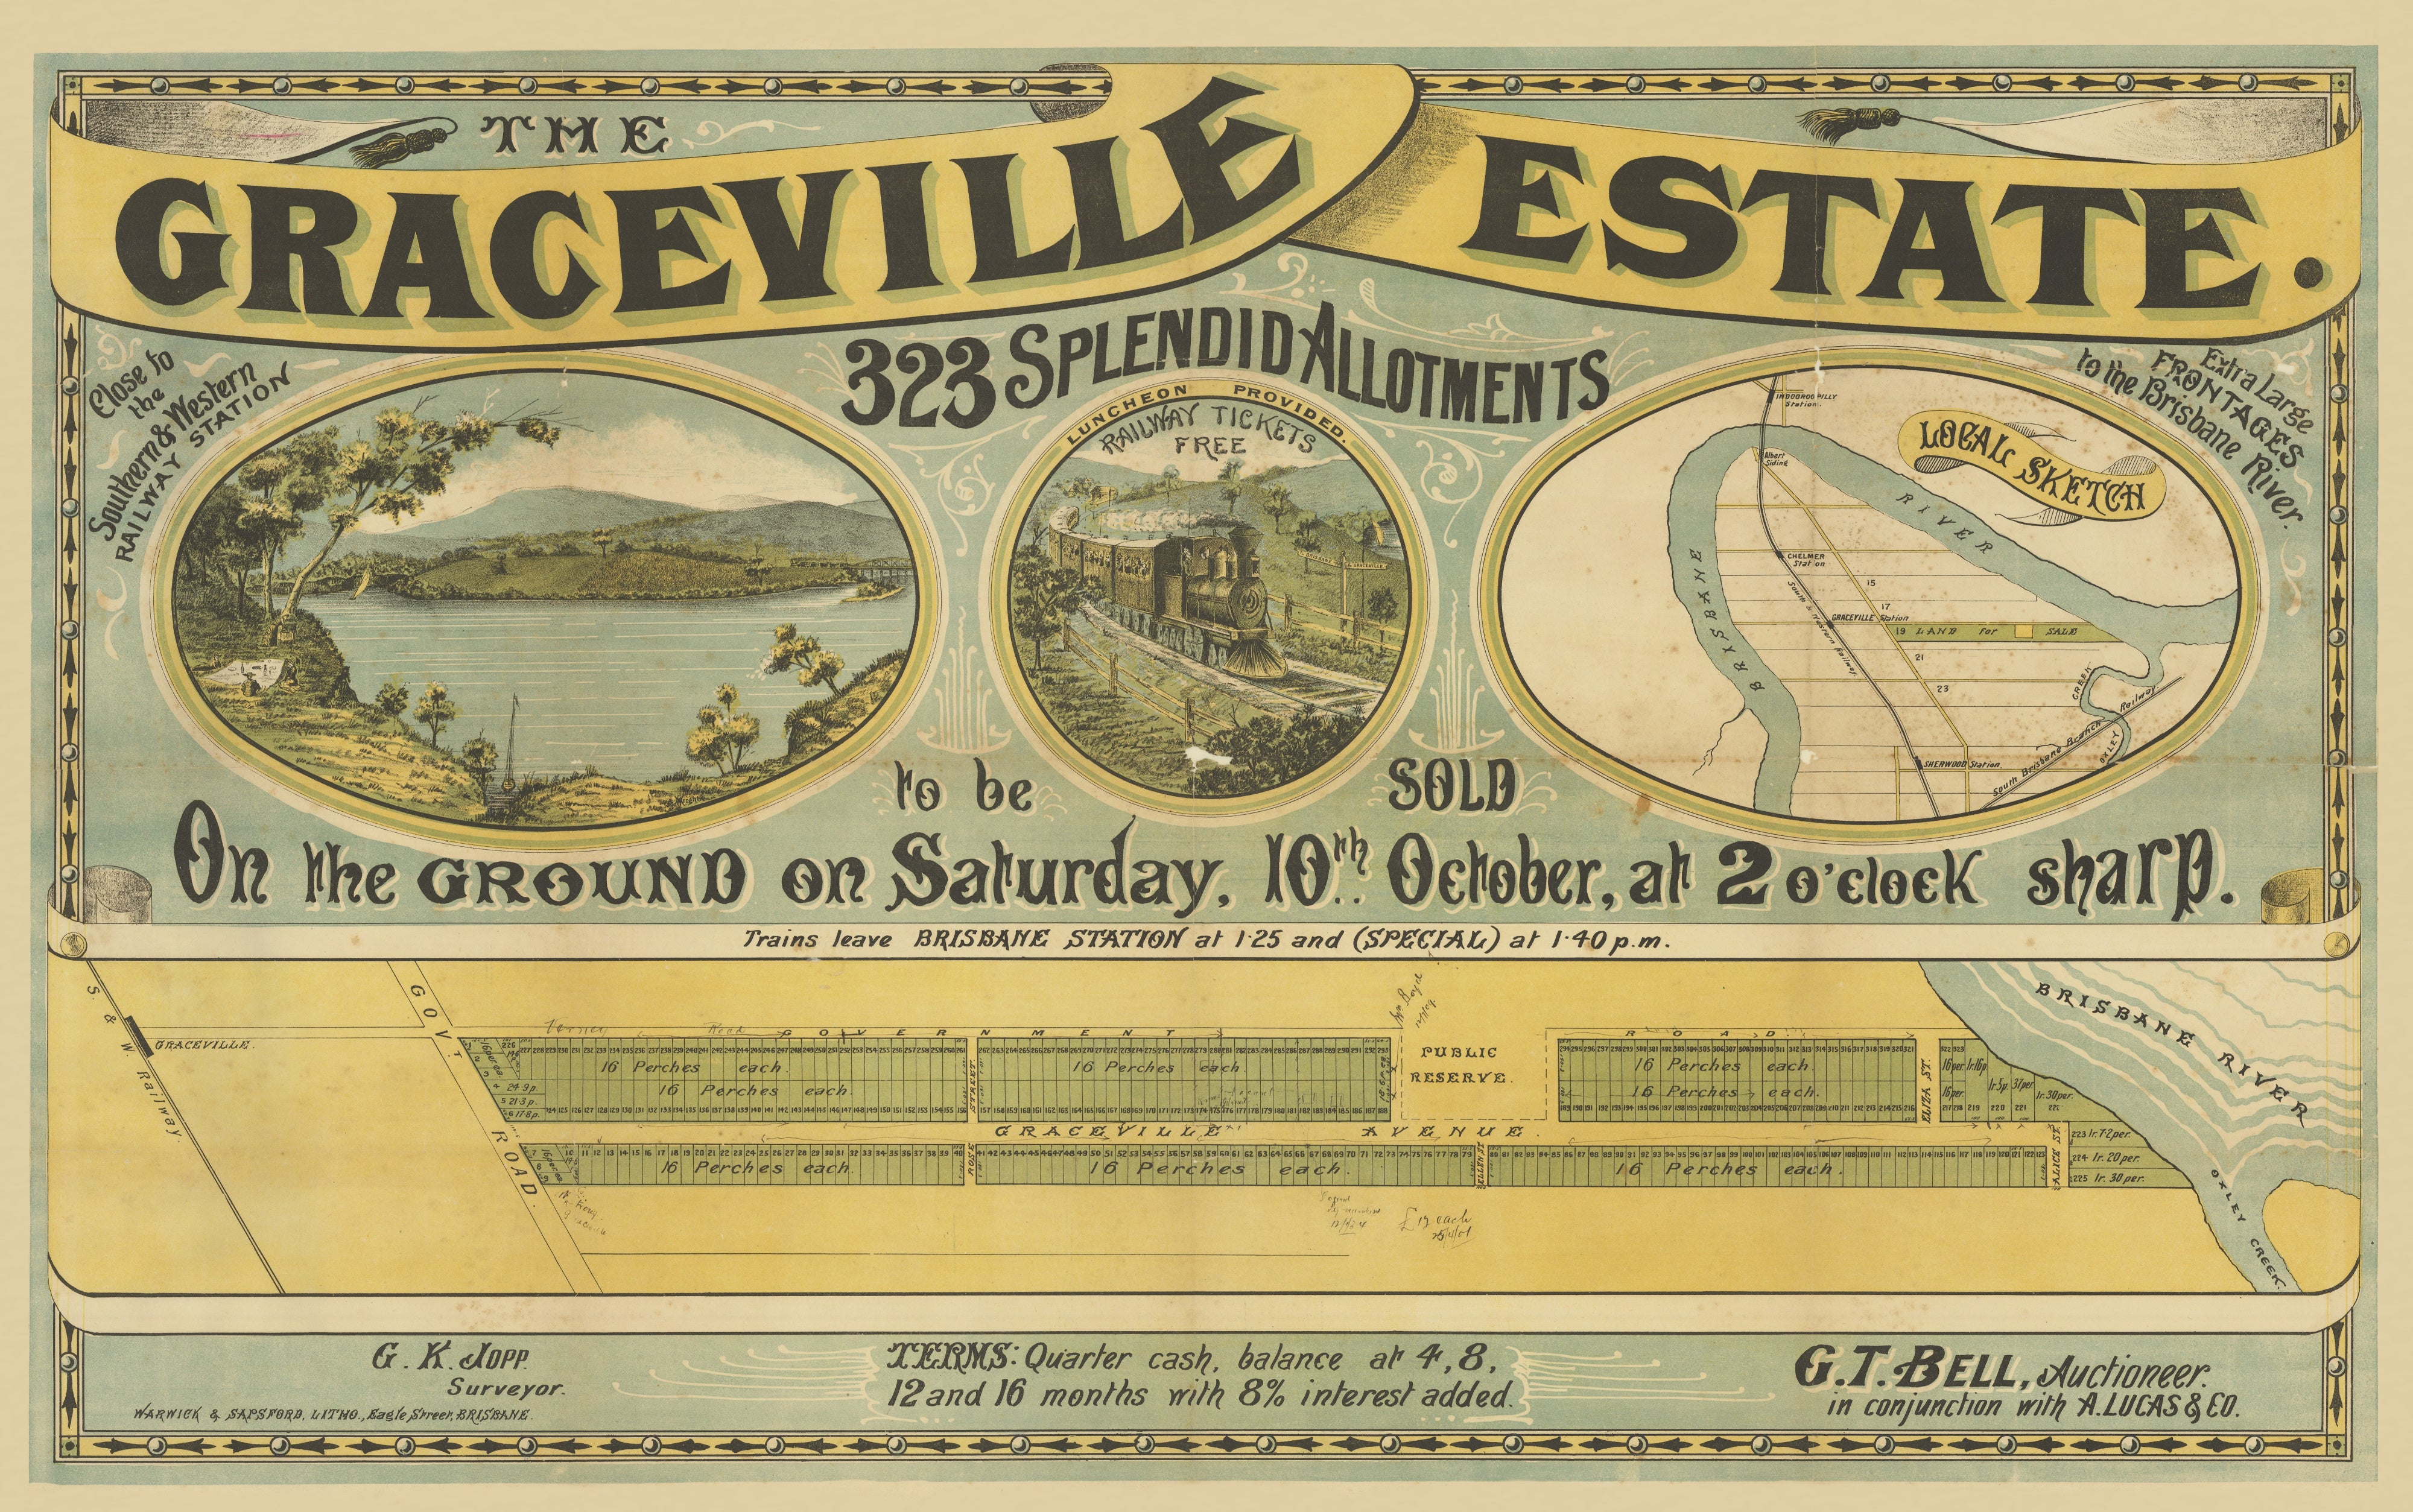 1885 Graceville - The Graceville Estate